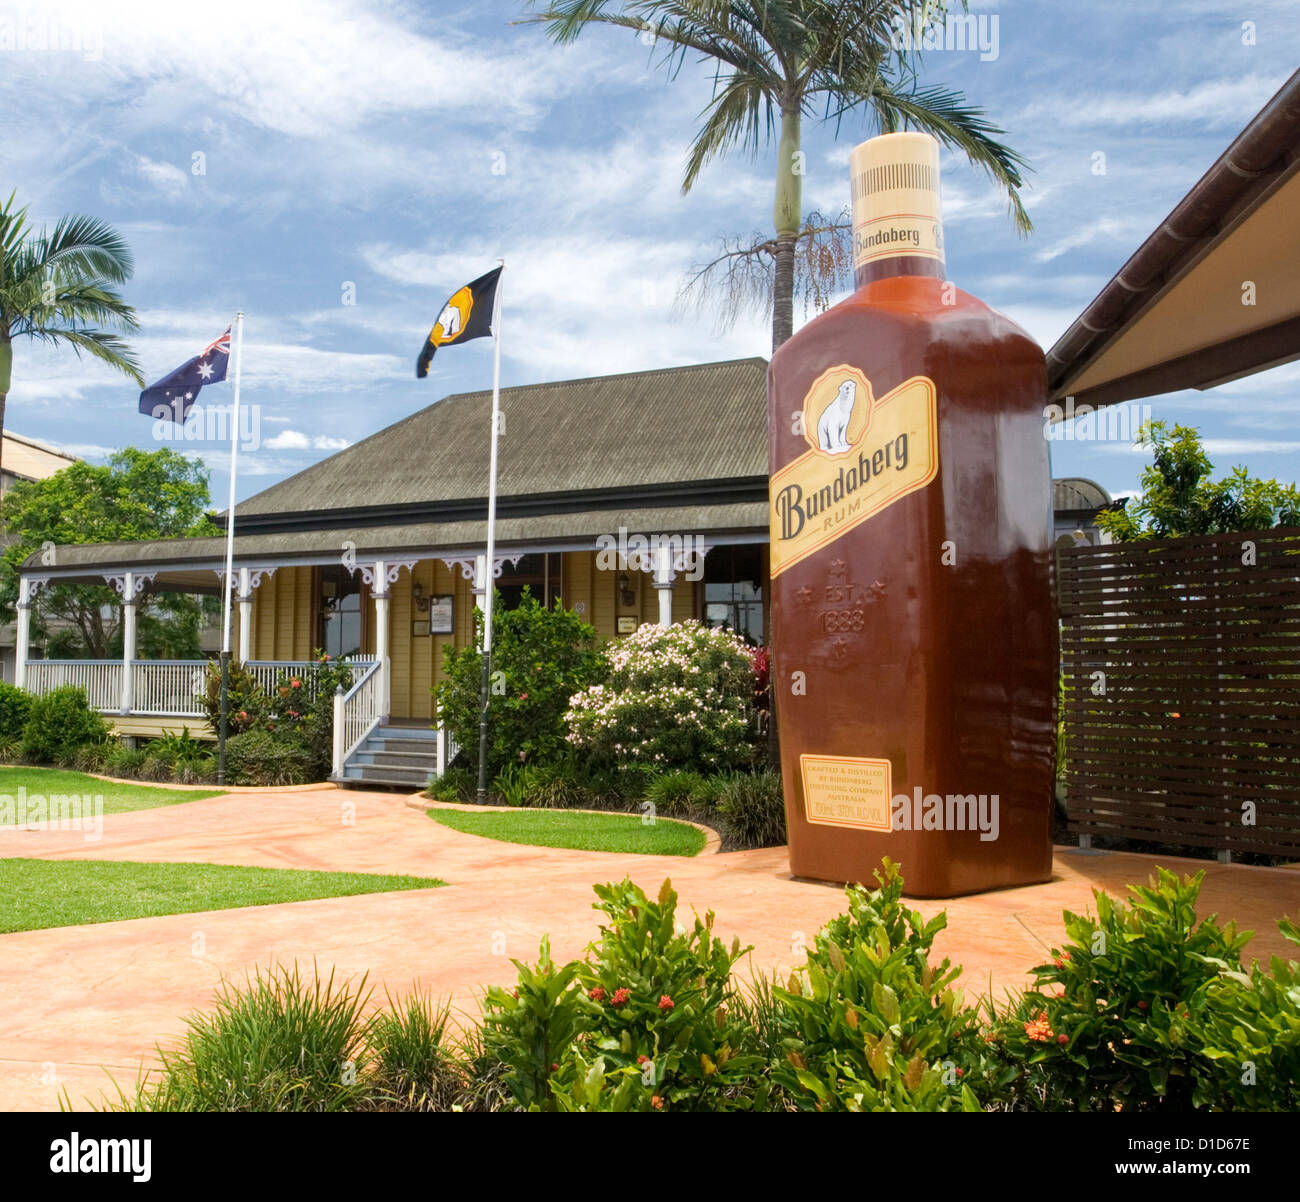 Entrée de la distillerie de rhum de Bundaberg / bond store attraction touristique avec de vieux chalet et gigantesque bouteille de rhum Banque D'Images